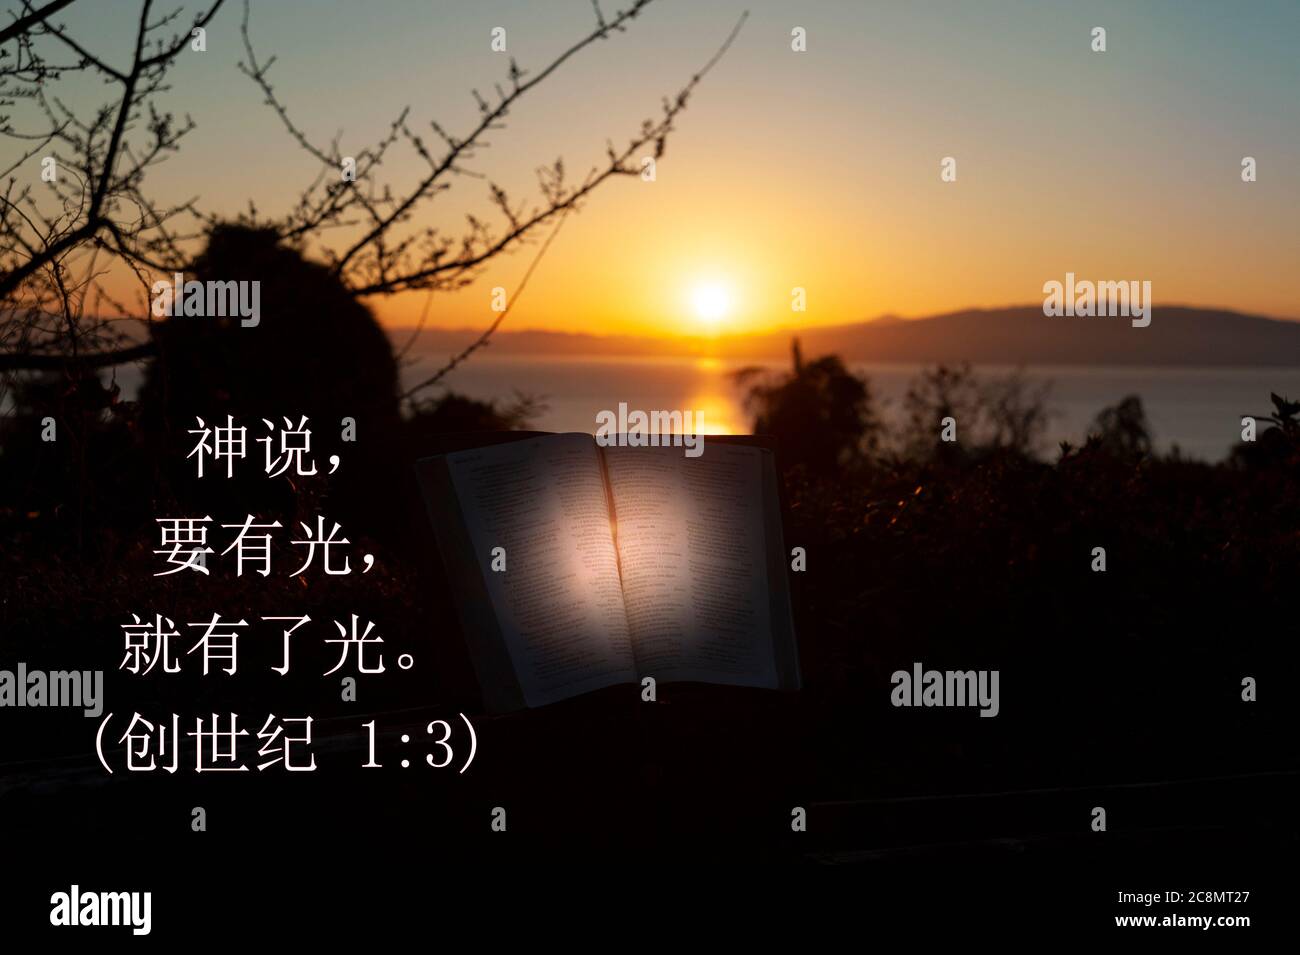 Heilige Bibel mit gerichtetem Licht geöffnet. Hintergrund mit Meer, goldenem Himmel und Sonnenaufgang hinter den Bergen. Text in chinesischen Zeichen aus Gen 1:3. Stockfoto